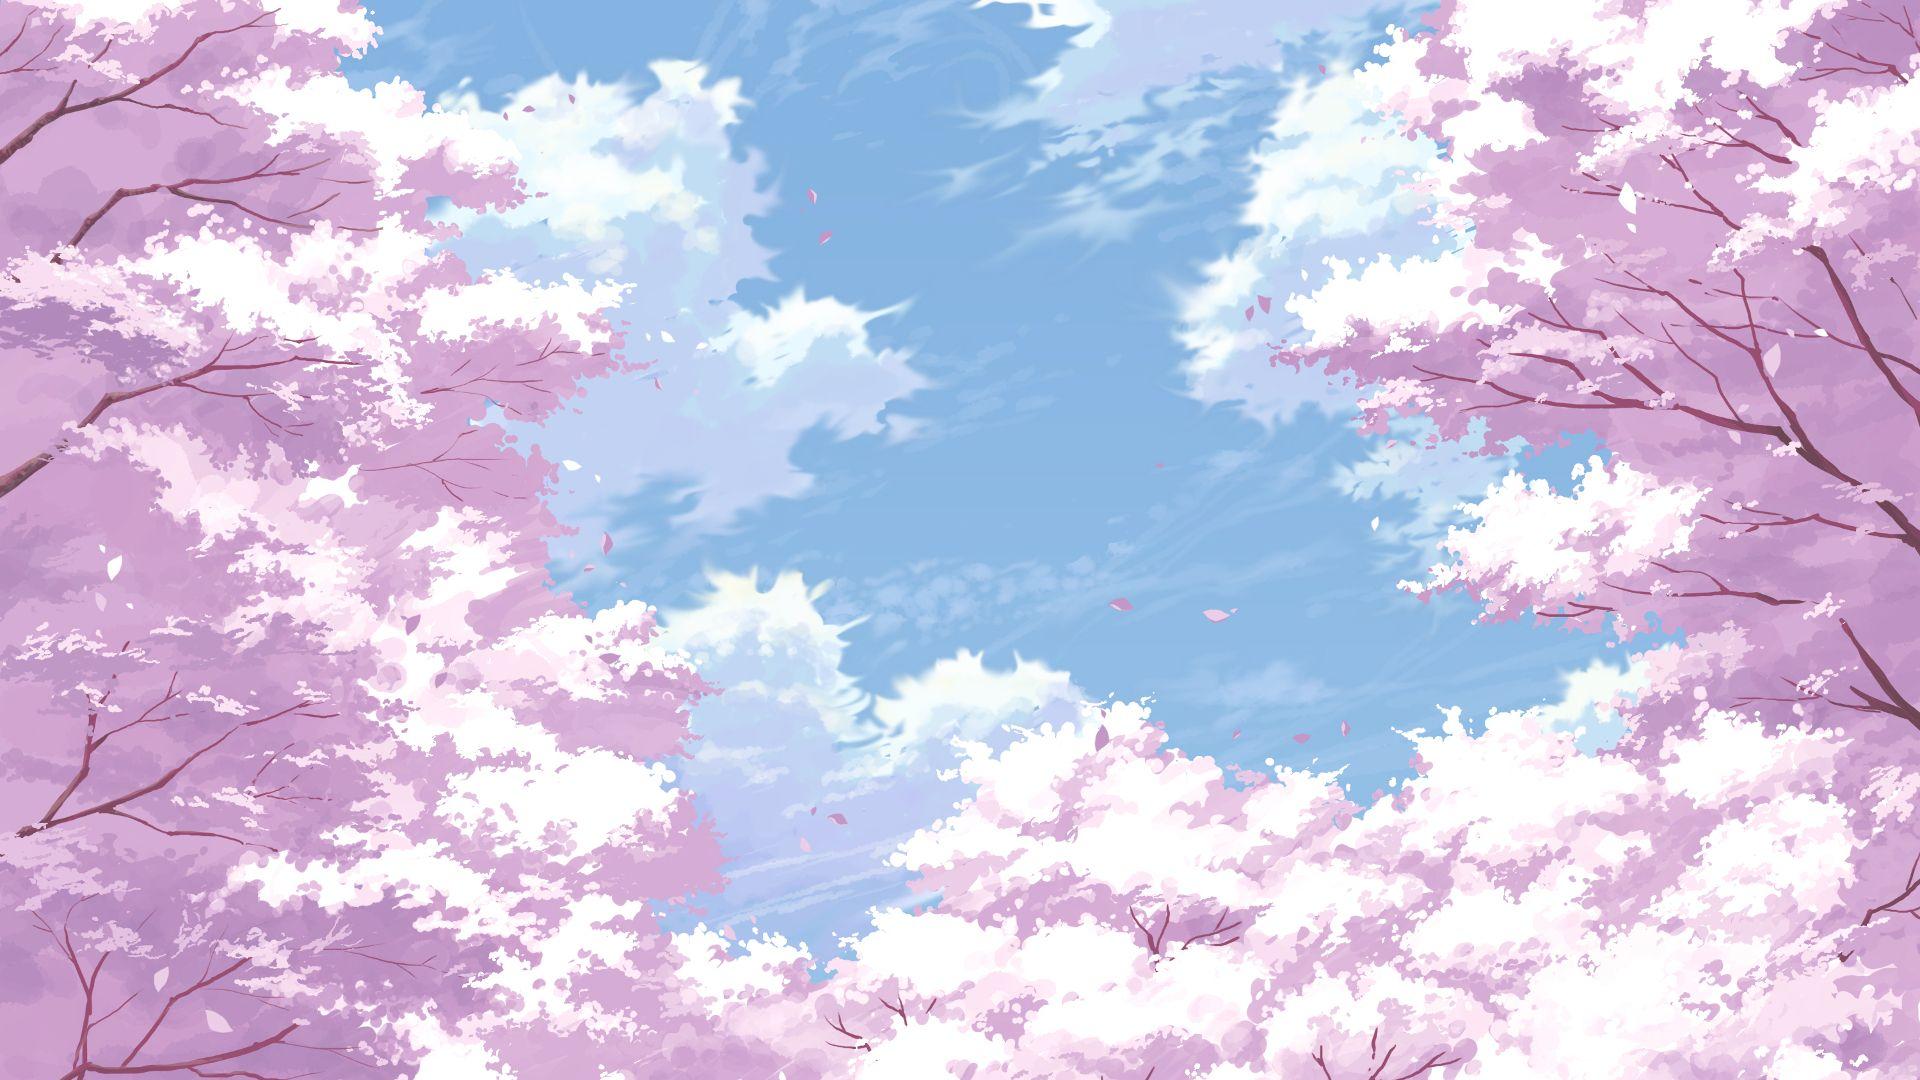 Cherry Blossom Sakura Anime Girl Back View for Laptop Notebook HD  wallpaper  Pxfuel